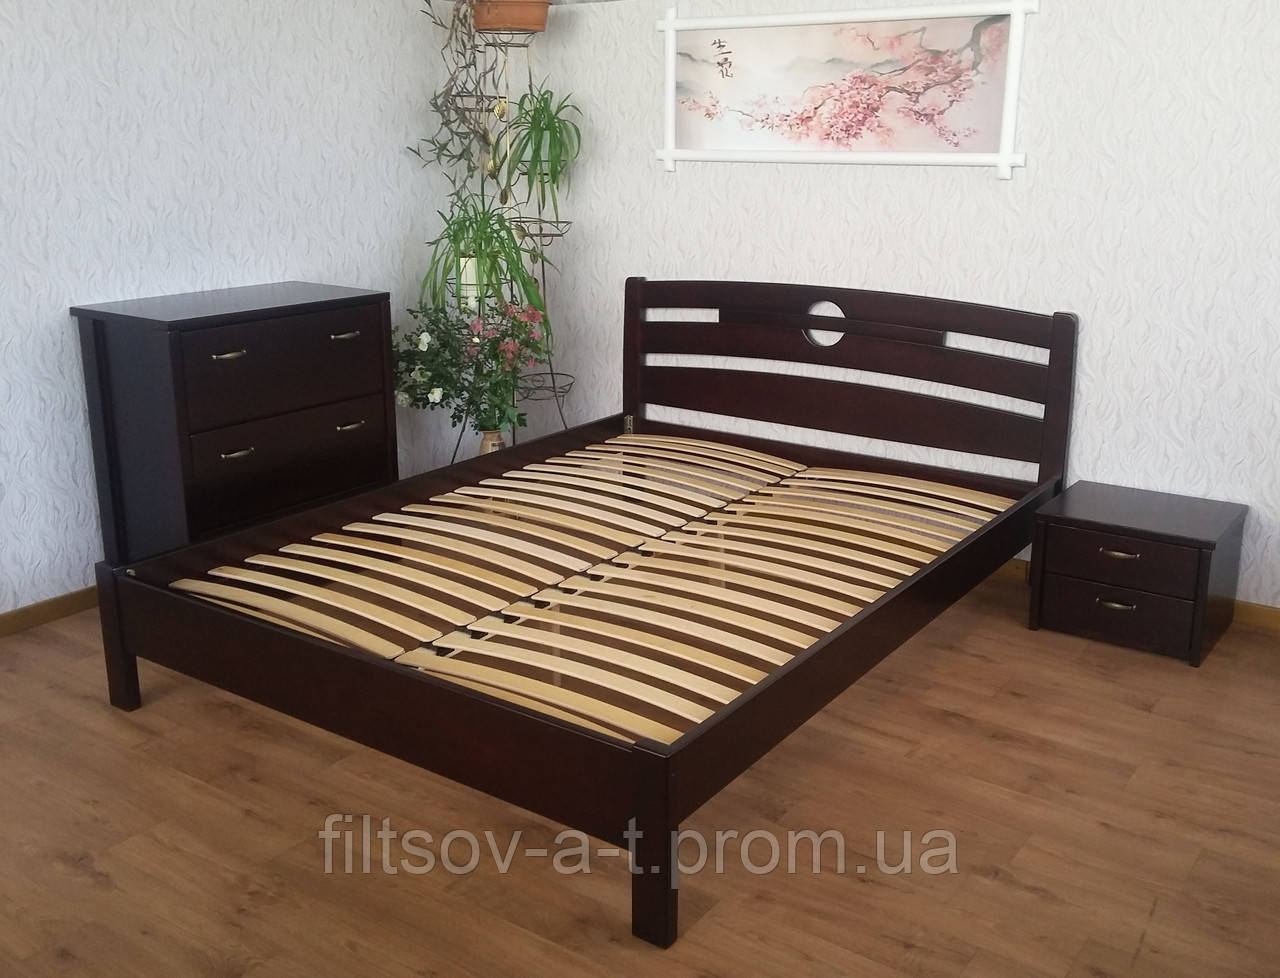 Двоспальне дерев'яне ліжко для спальні з масиву натурального дерева "Сакура" від виробника